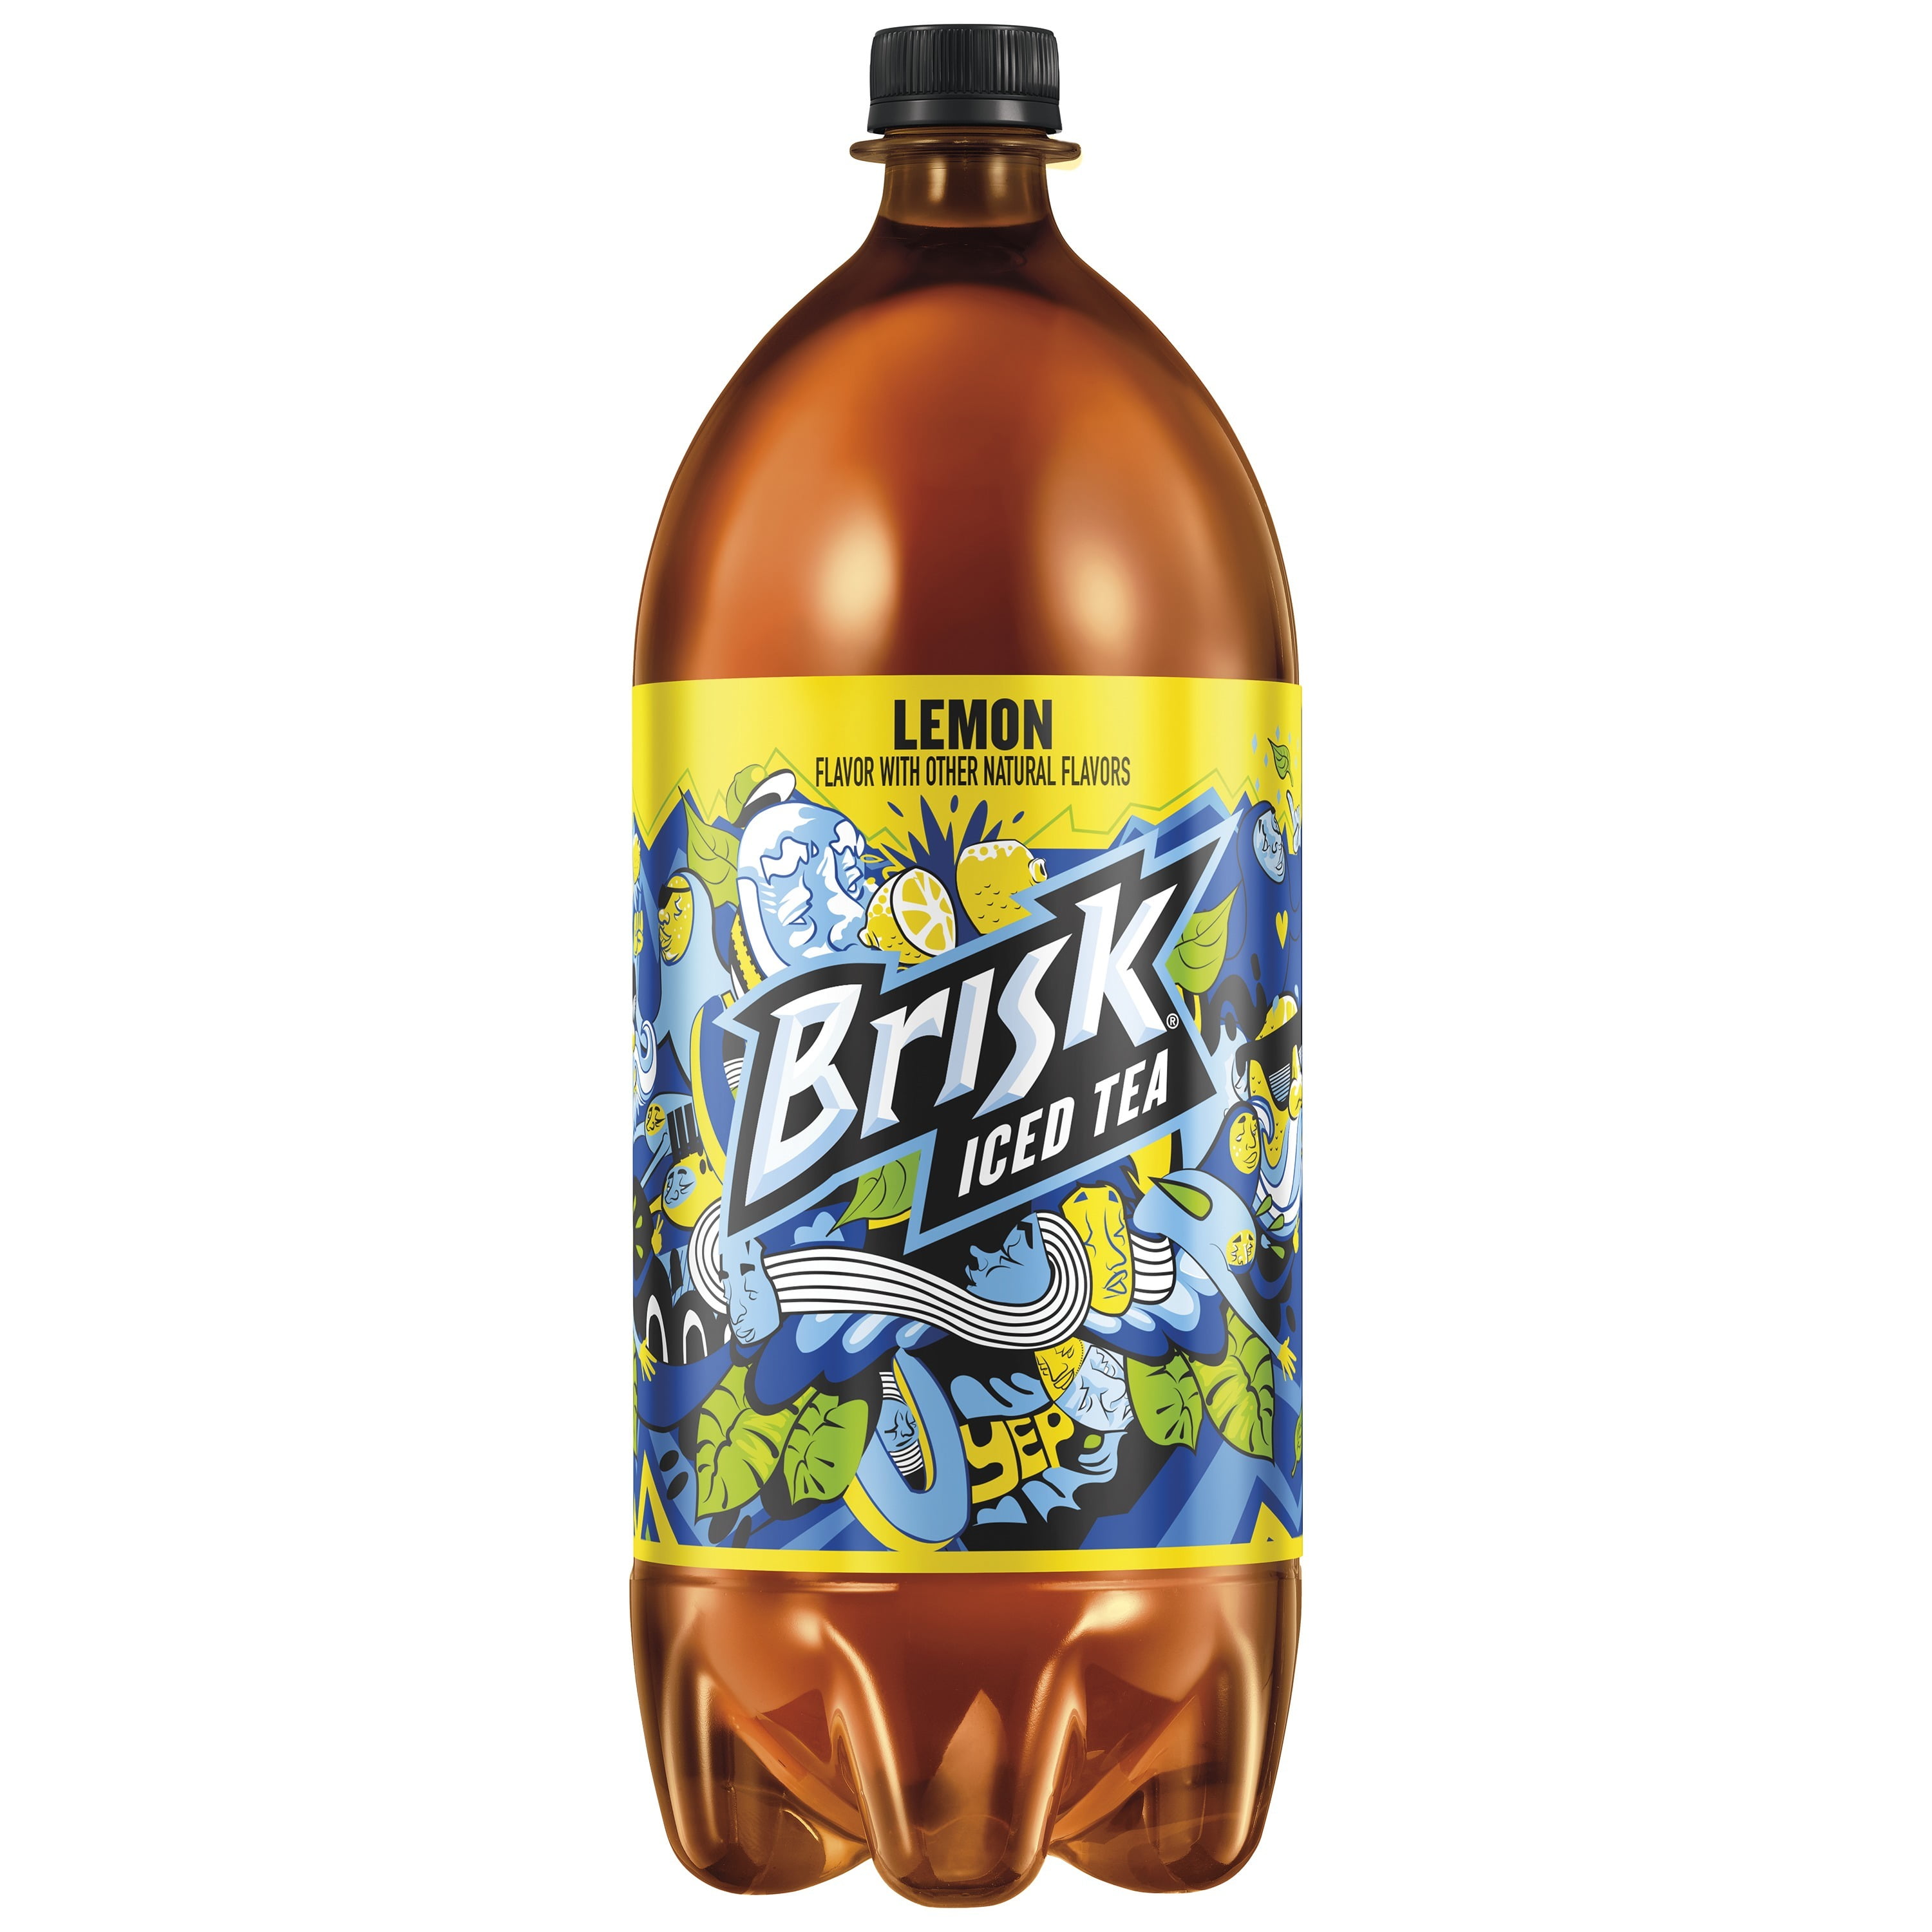 Brisk Lemon Iced Tea 2 Liter Bottle